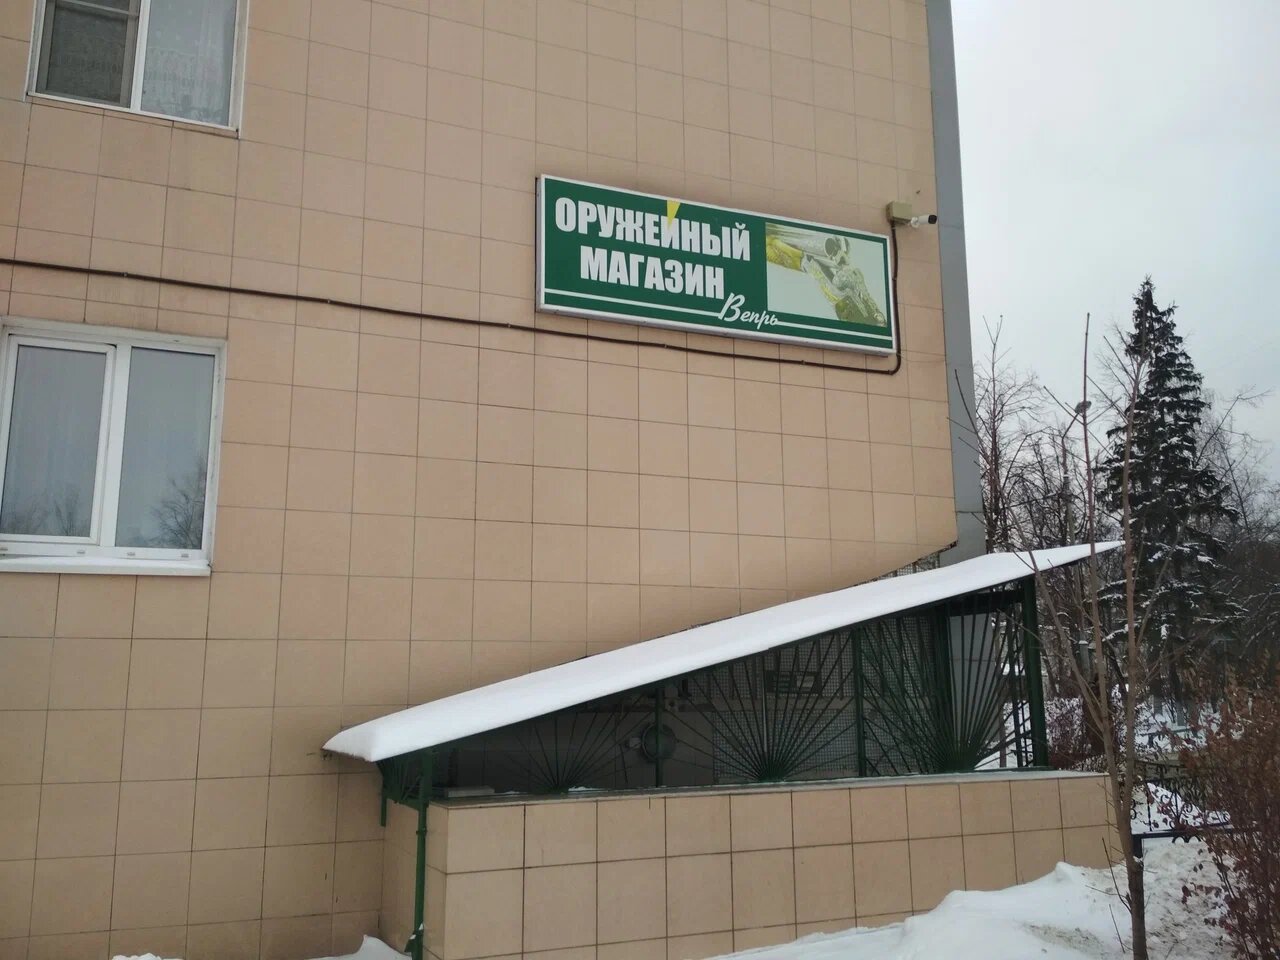 Вход в оружейный магазин "Вепрь" на Можайском шоссе в Одинцово